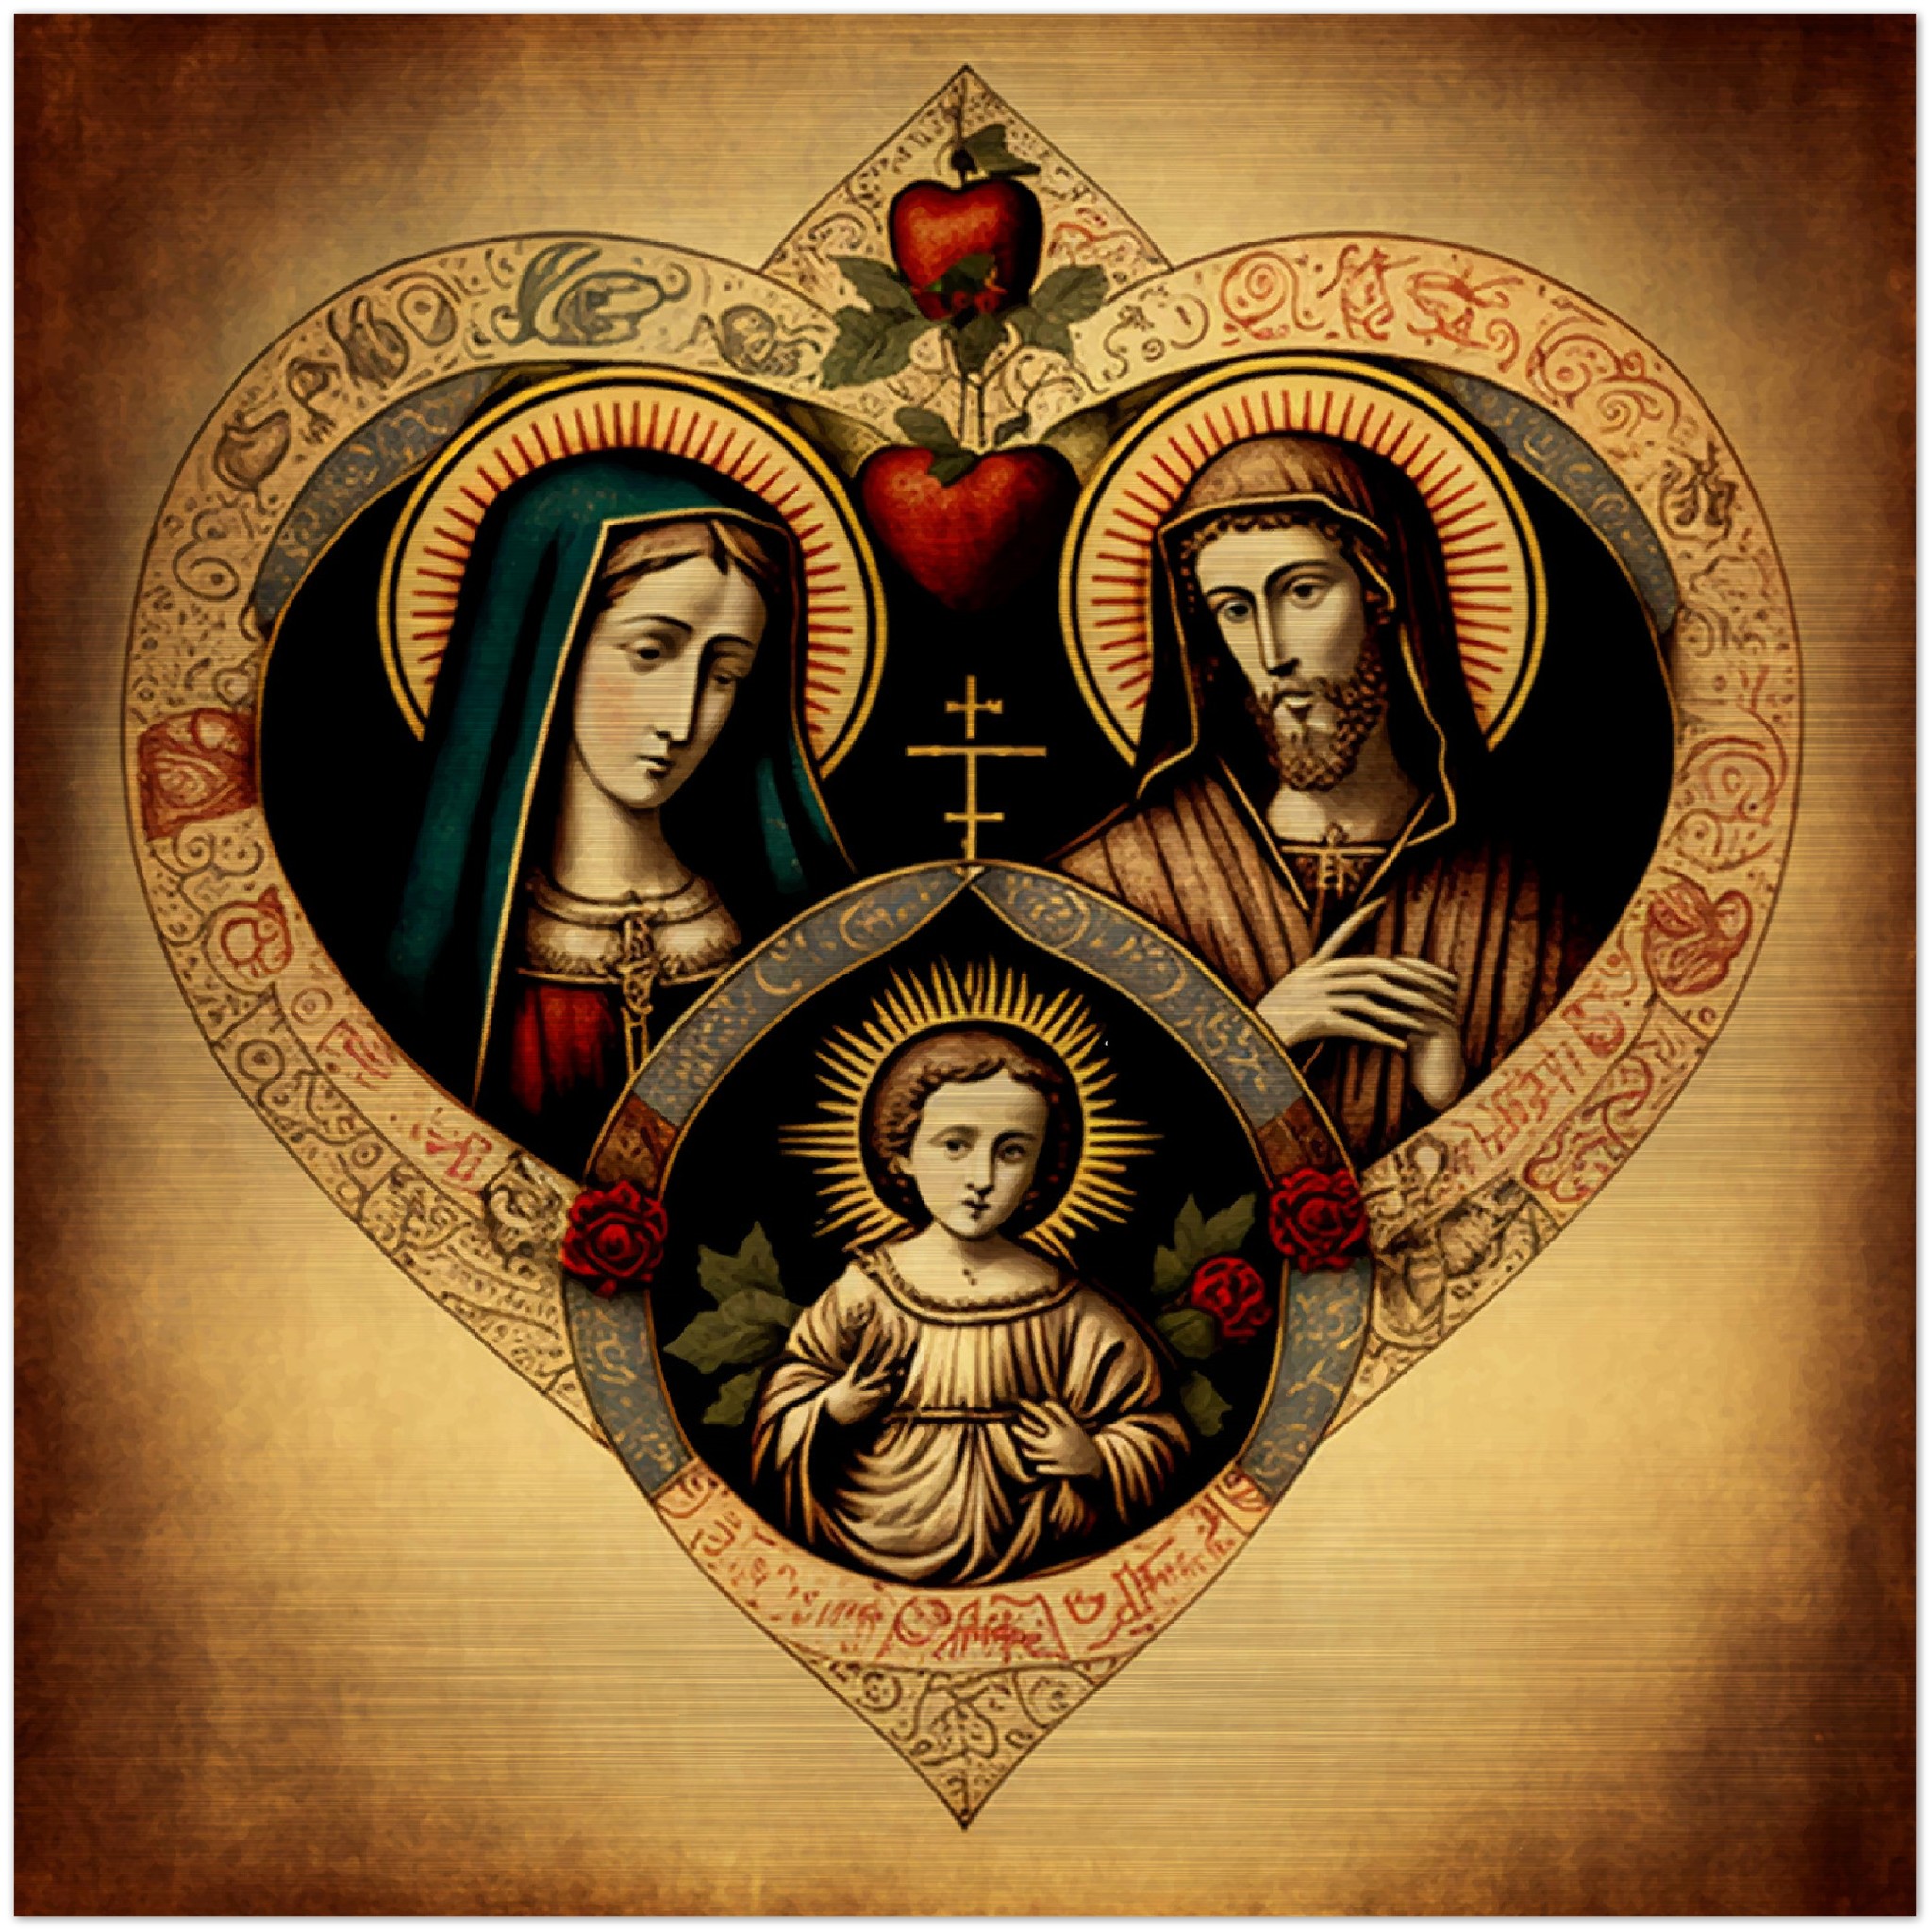 JMJ Holy Family ✠ Brushed Aluminum Icon Brushed Aluminum Icons Rosary.Team